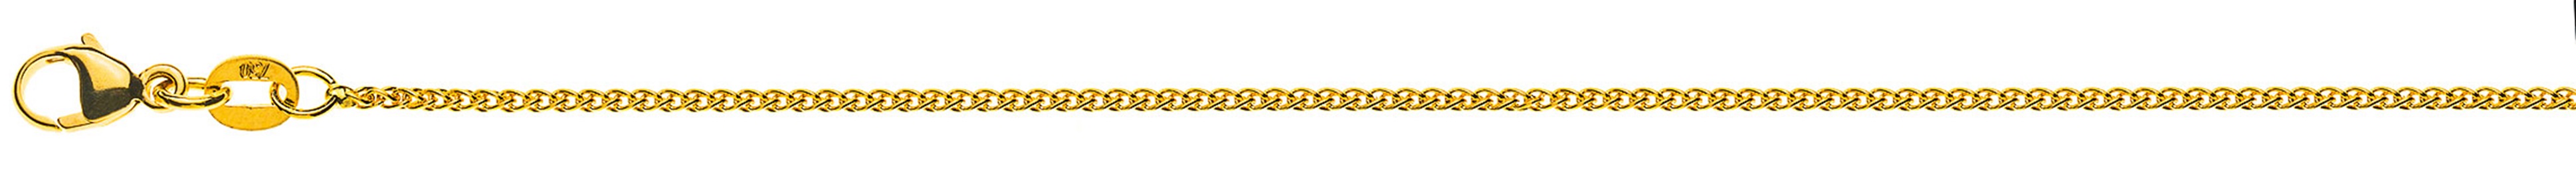 AURONOS Prestige Halskette Gelbgold 18K Zopfkette 38cm 1.2mm